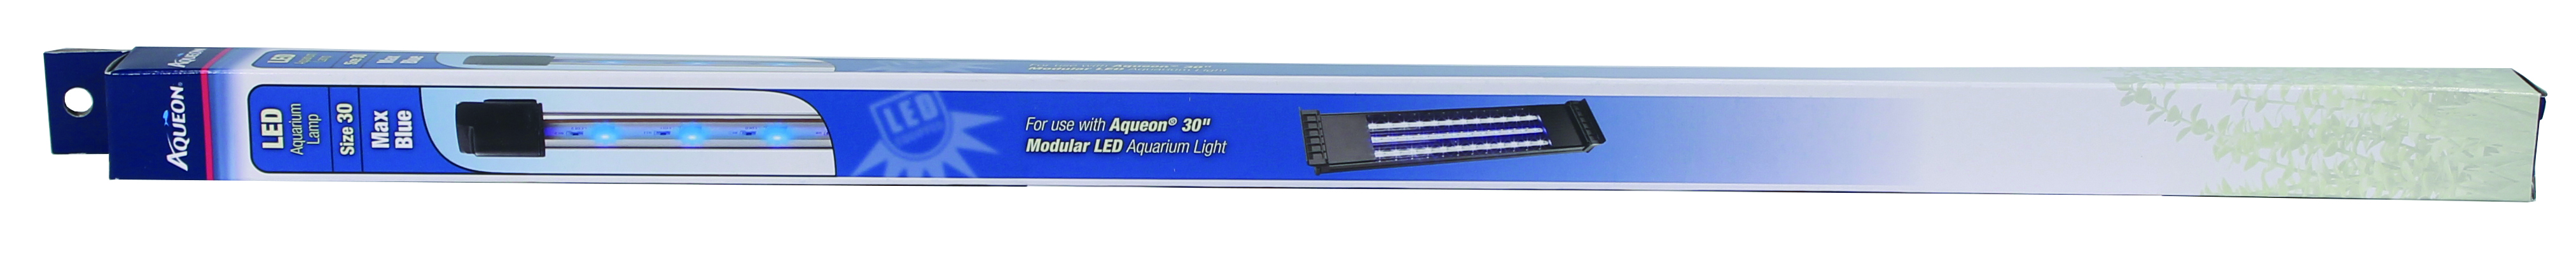 MAX BLUE MODULAR LED AQUARIUM LAMP